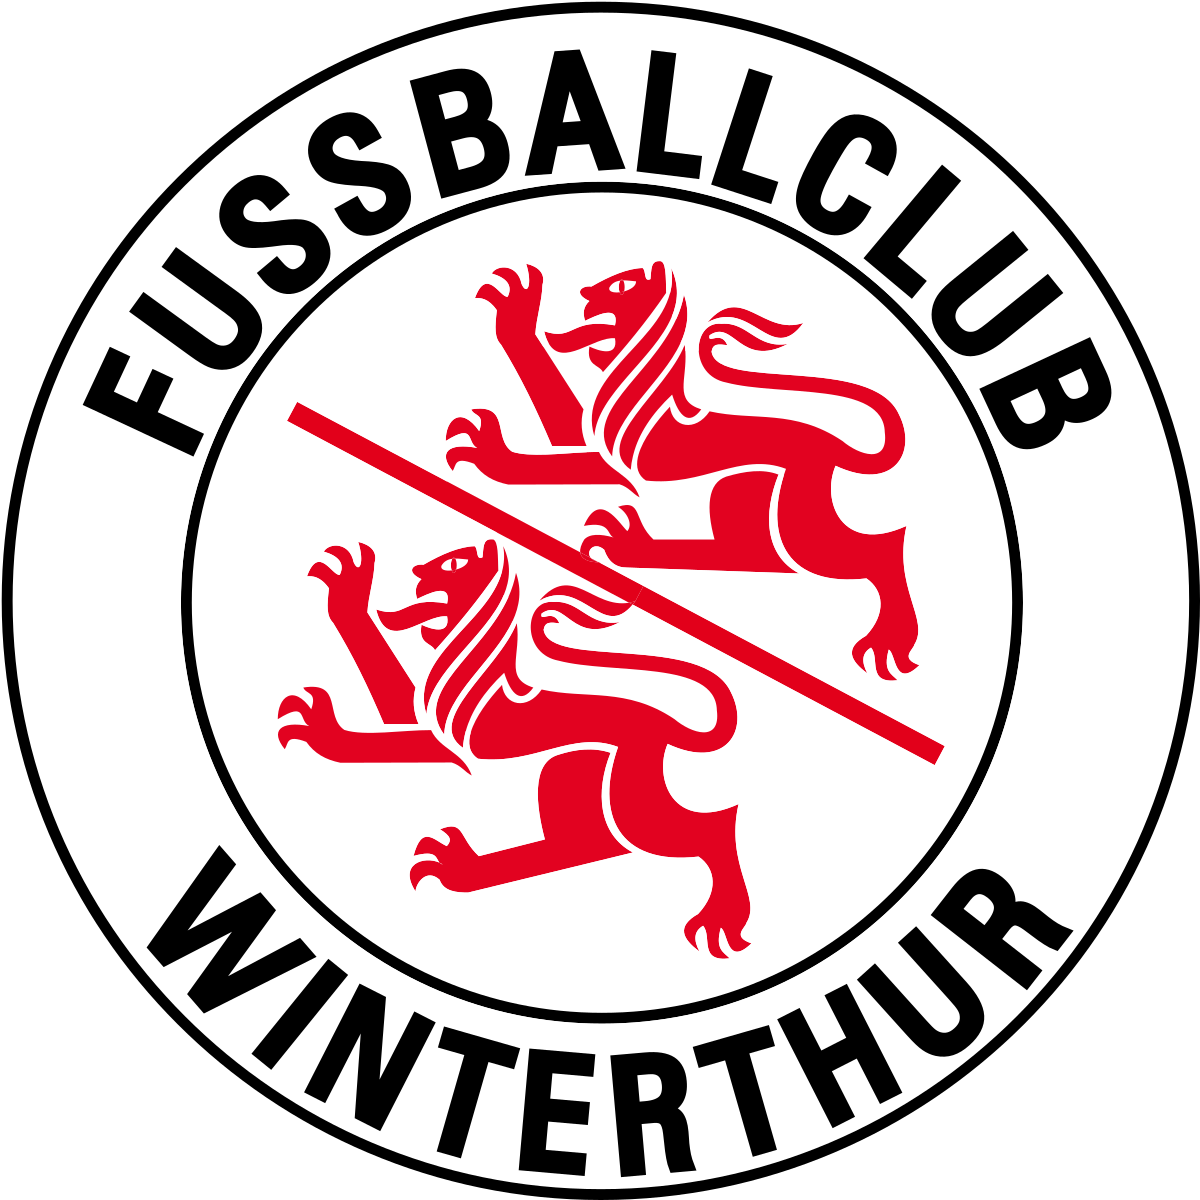 Winterthur vs Young Boys Prediction: An open contest ahead